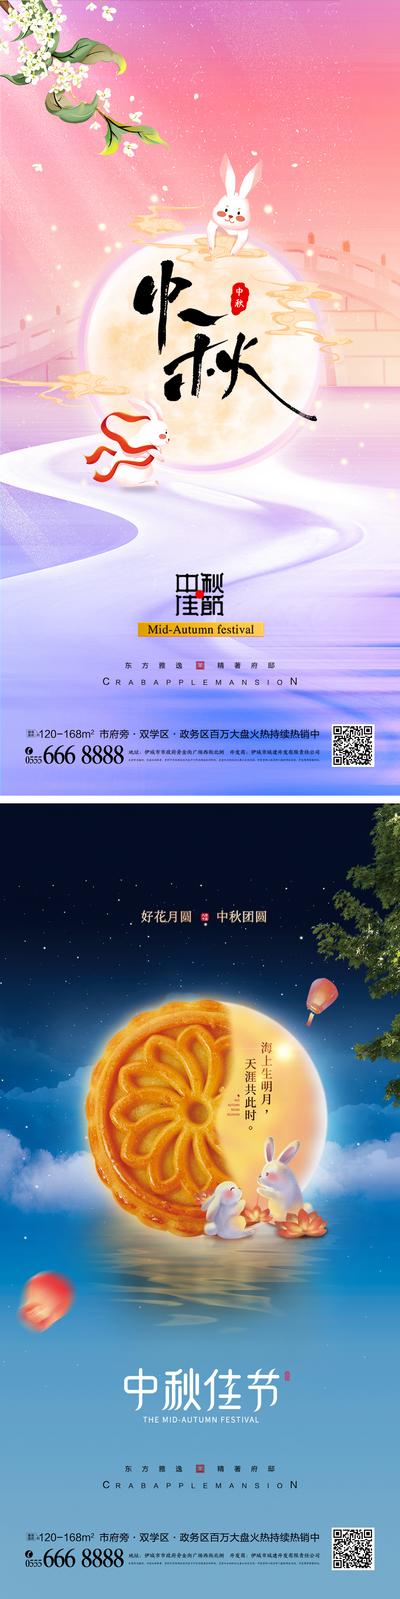 南门网 中秋节宣传海报